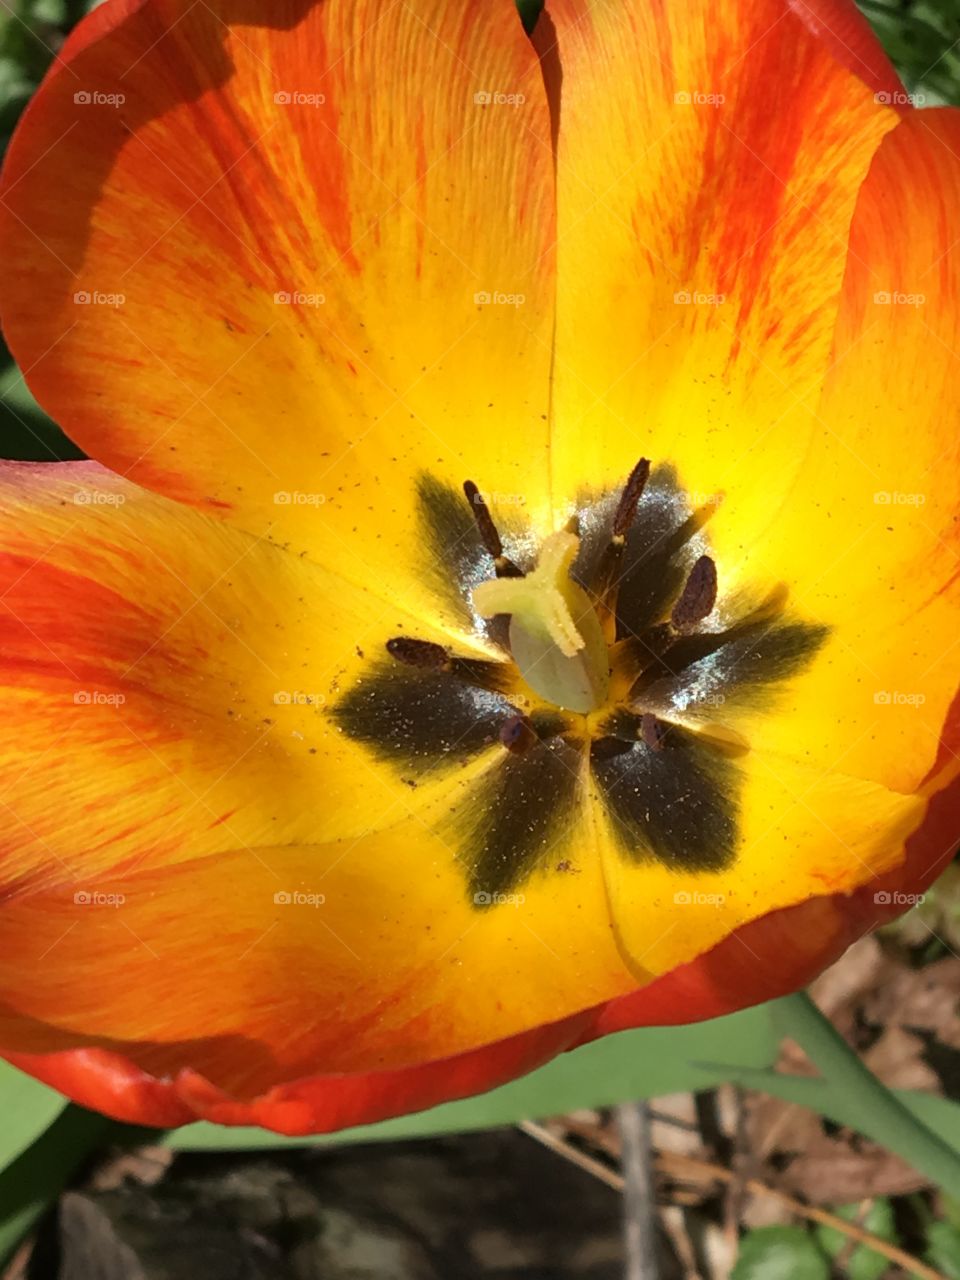 Yellow & orange tulip face